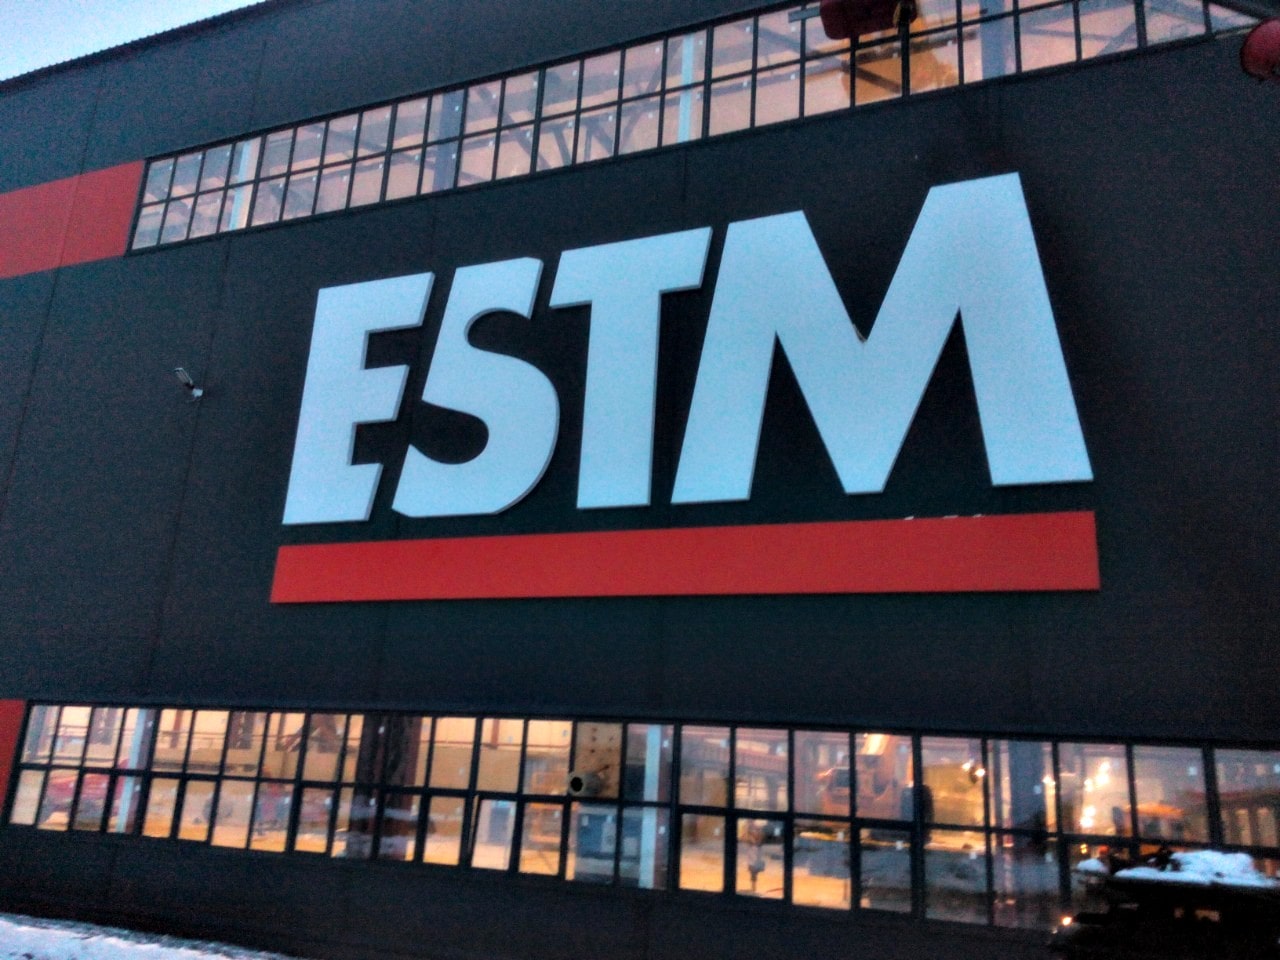 Производство и монтаж фасадных вывесок для компании  ESTM